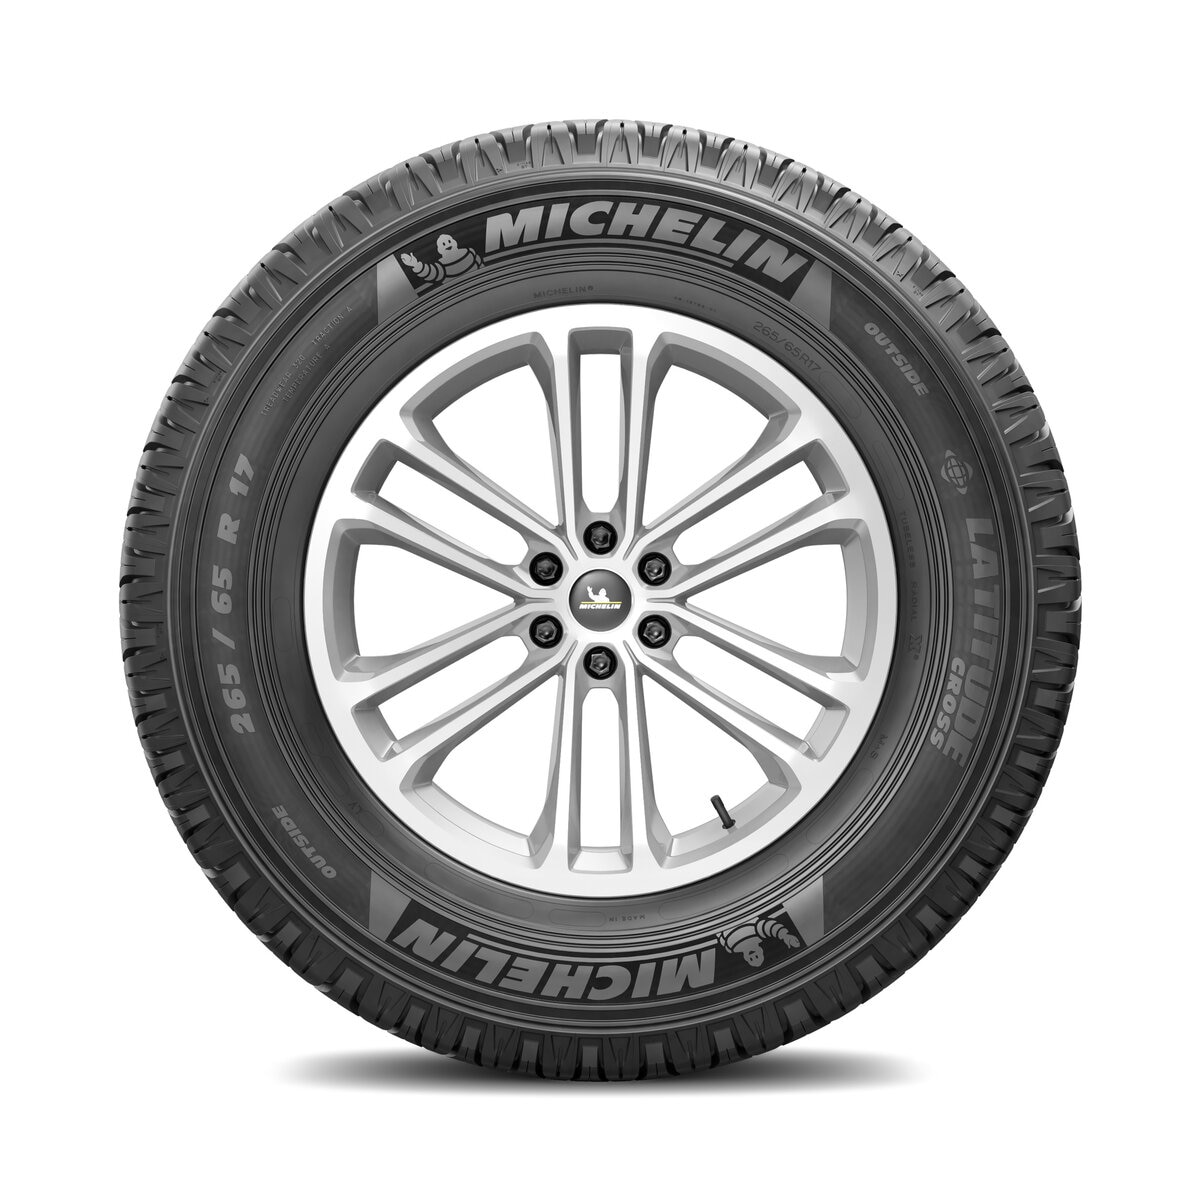 Michelin 205/70 R15 100H EXTRA LOAD TL LATITUDE CROSS MI ...